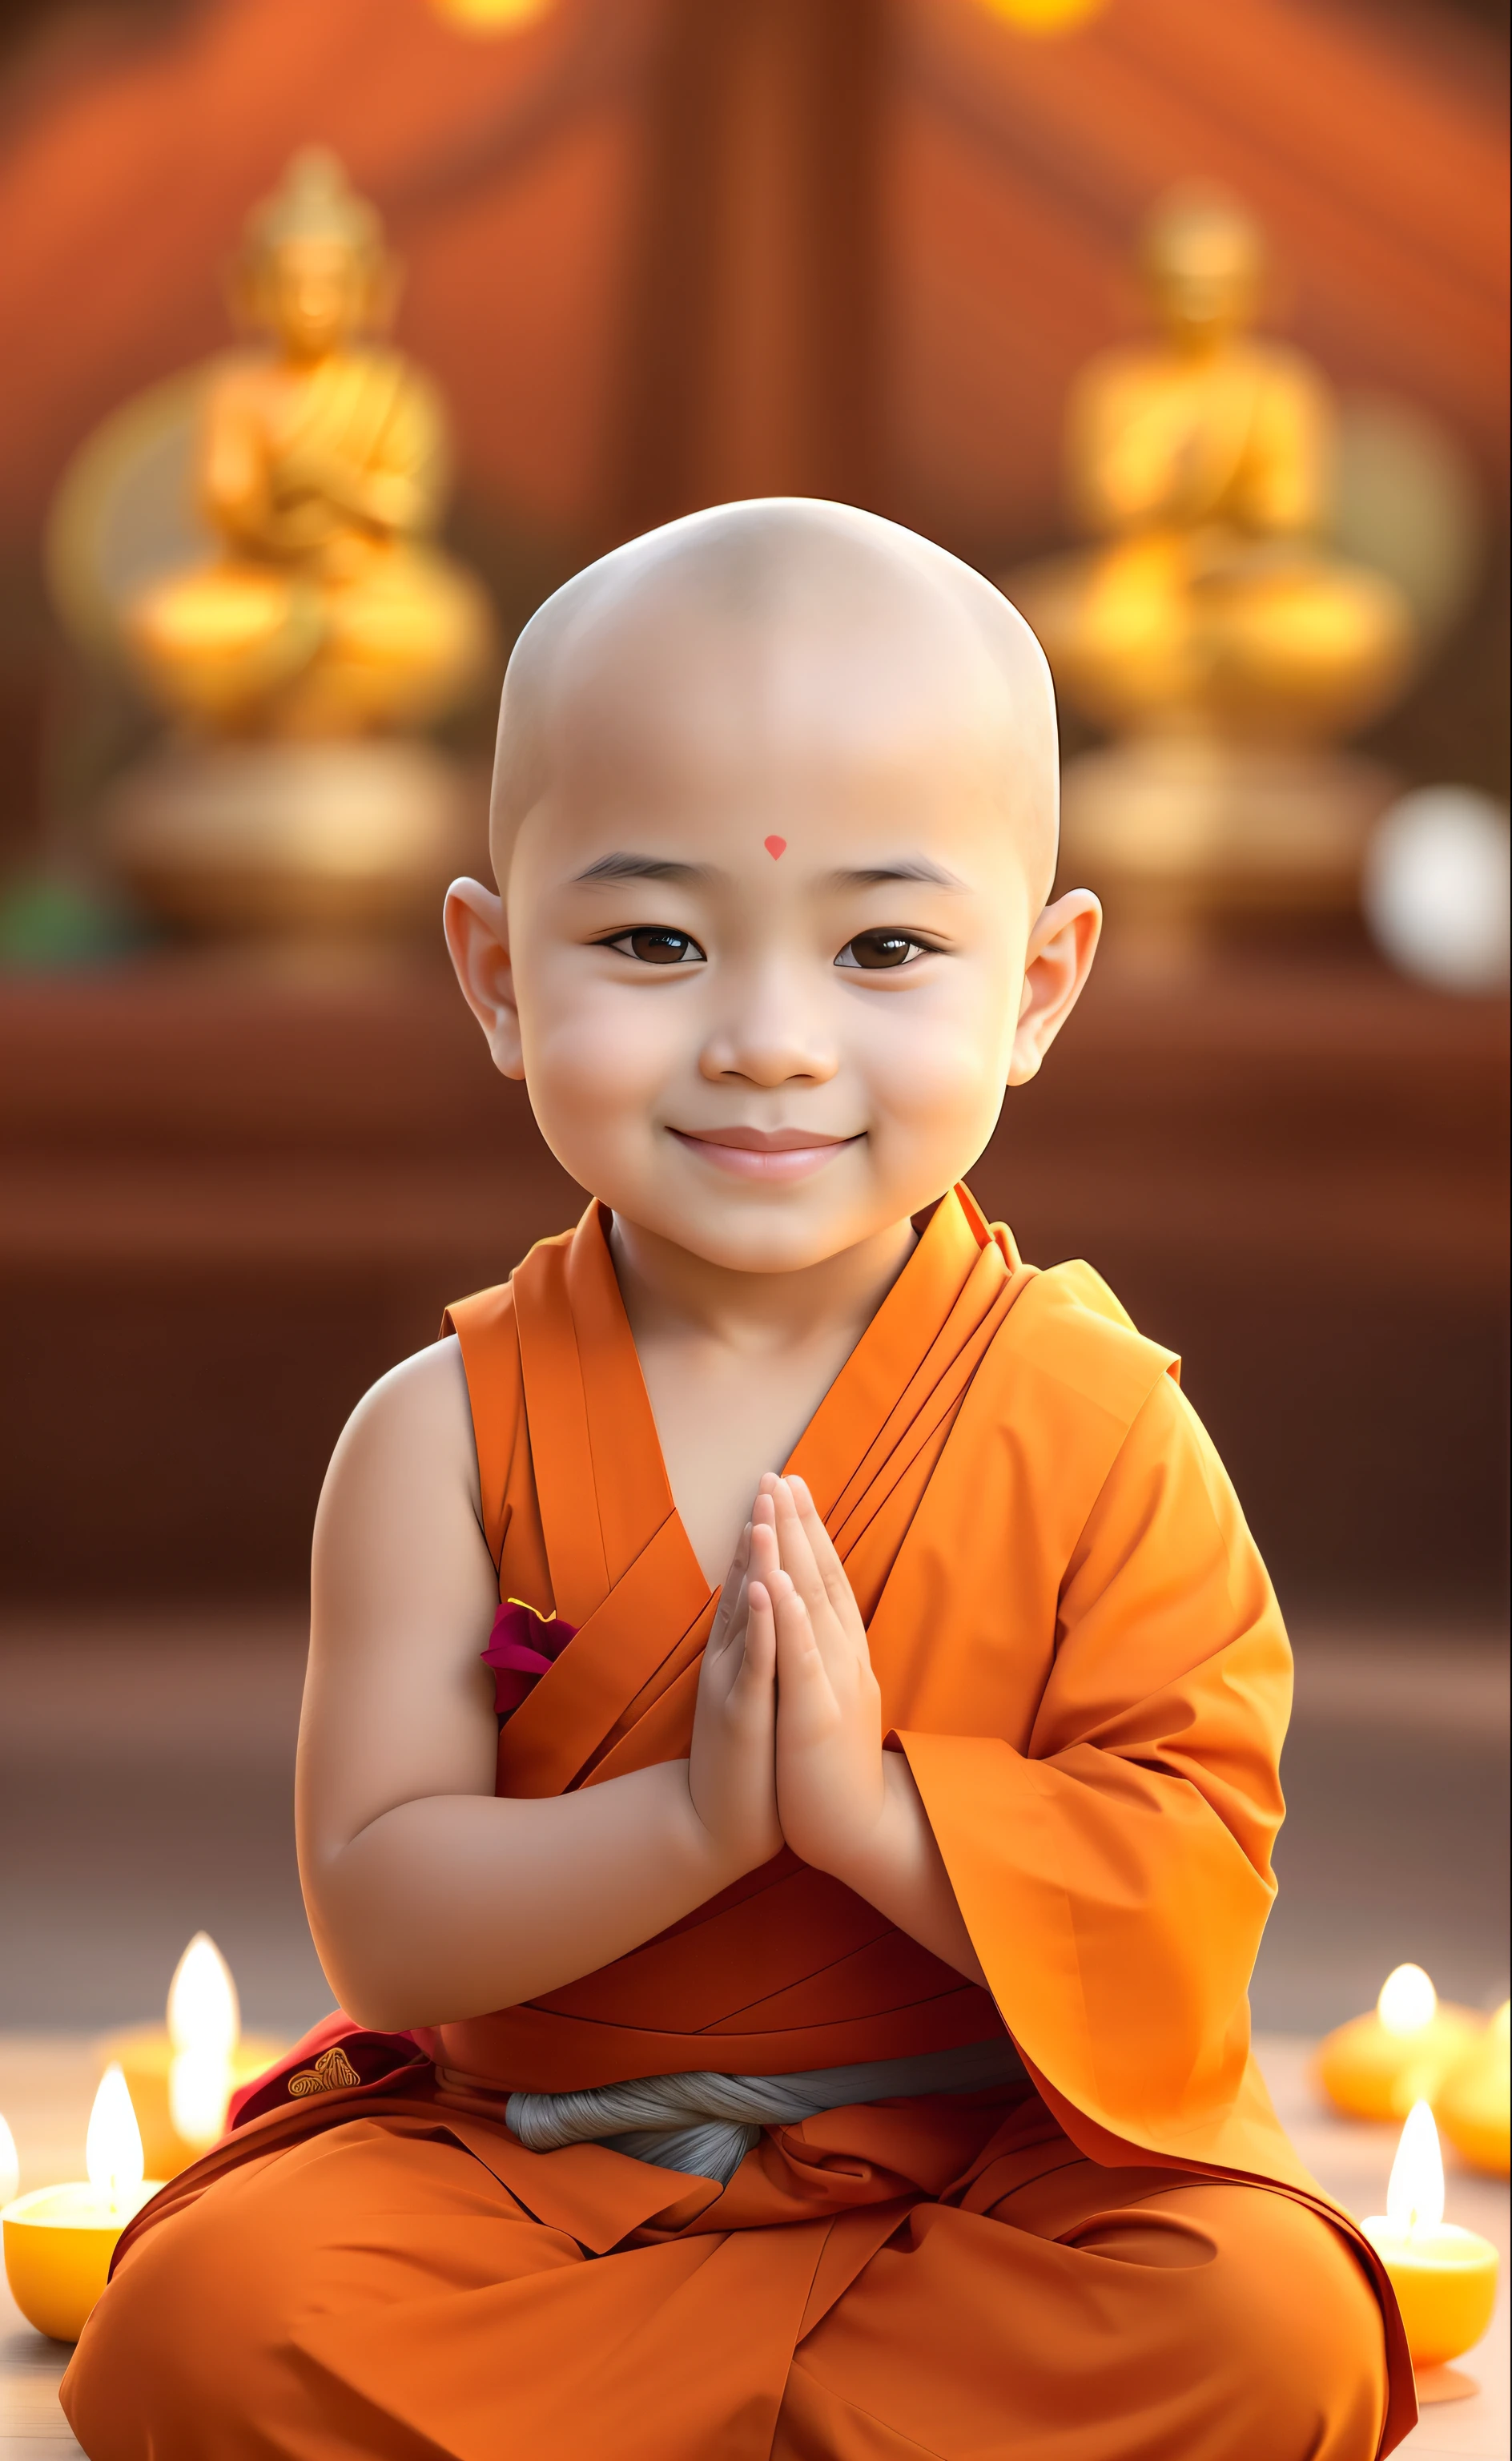 un primer plano de una persona sentada en posición de meditación, Budista, buddhist monje, budismo, monje clothes, una sonrisa serena, monje, monje meditation, protector de pantalla, niño de pechos grandes, lindo lindo, nivanh chanthara, chico mono, Niños felices, foto de perfil personal, expresión serena, sonrisa inocente, hermoso encantador, linda hermosa, paz, preciosa pintura digital, tailandés